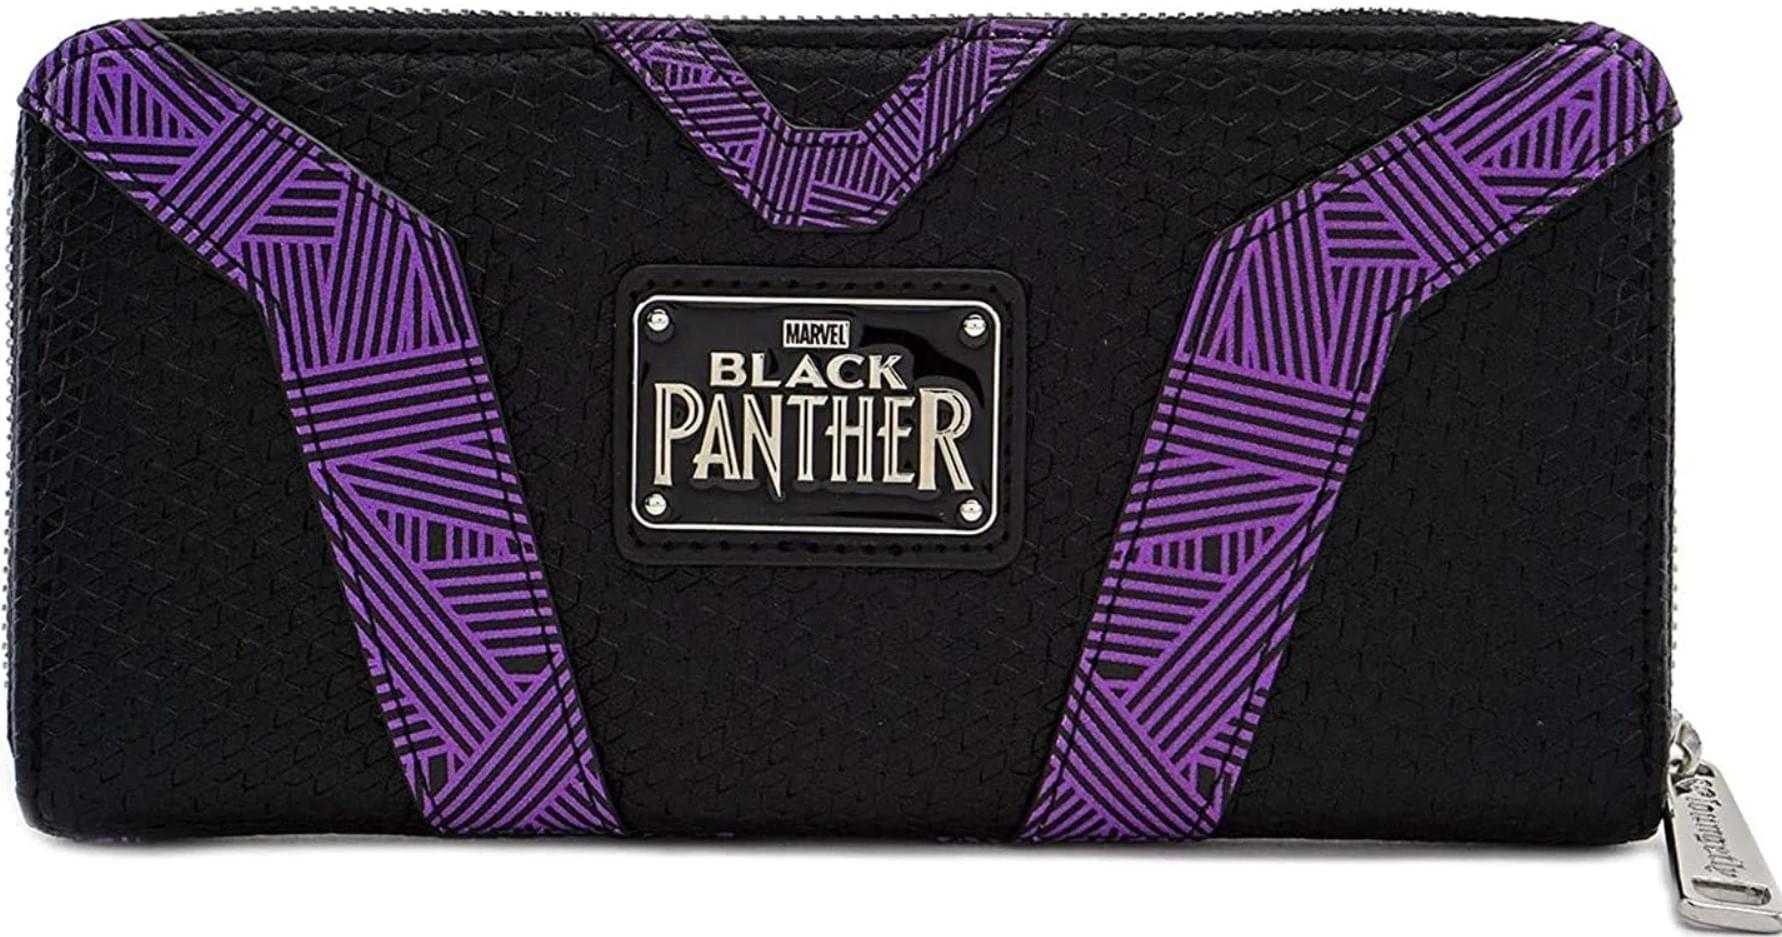 Marvel Black Panther Zip Around Wallet